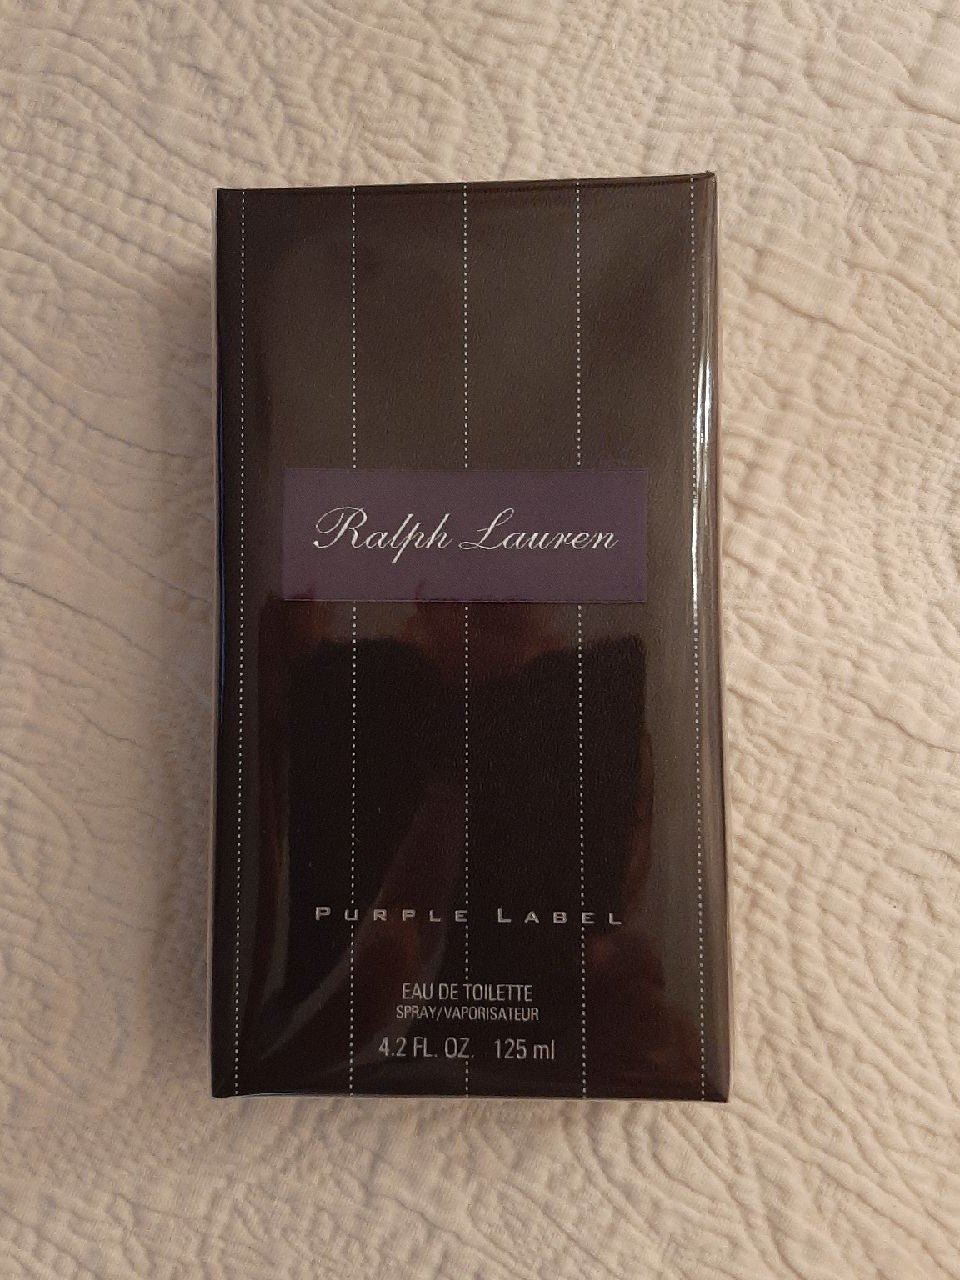 Ralph Lauren Purple Label Cologne, Eau de Toilette 4.2 oz/125 ml Spray.